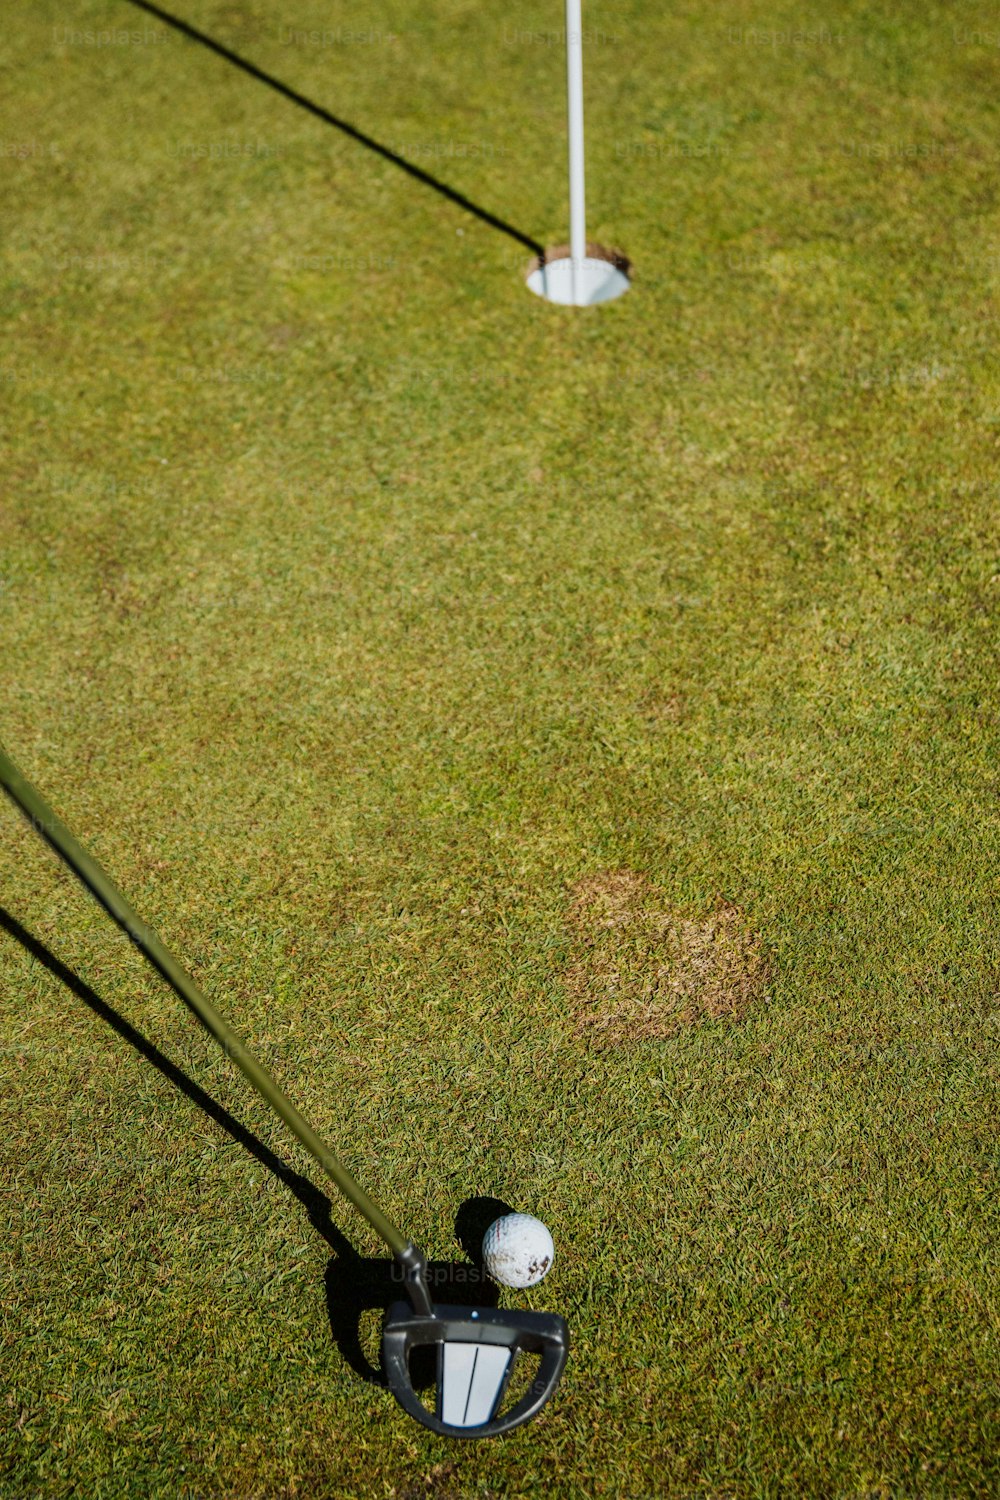 deux clubs de golf et une balle de golf sur l’herbe